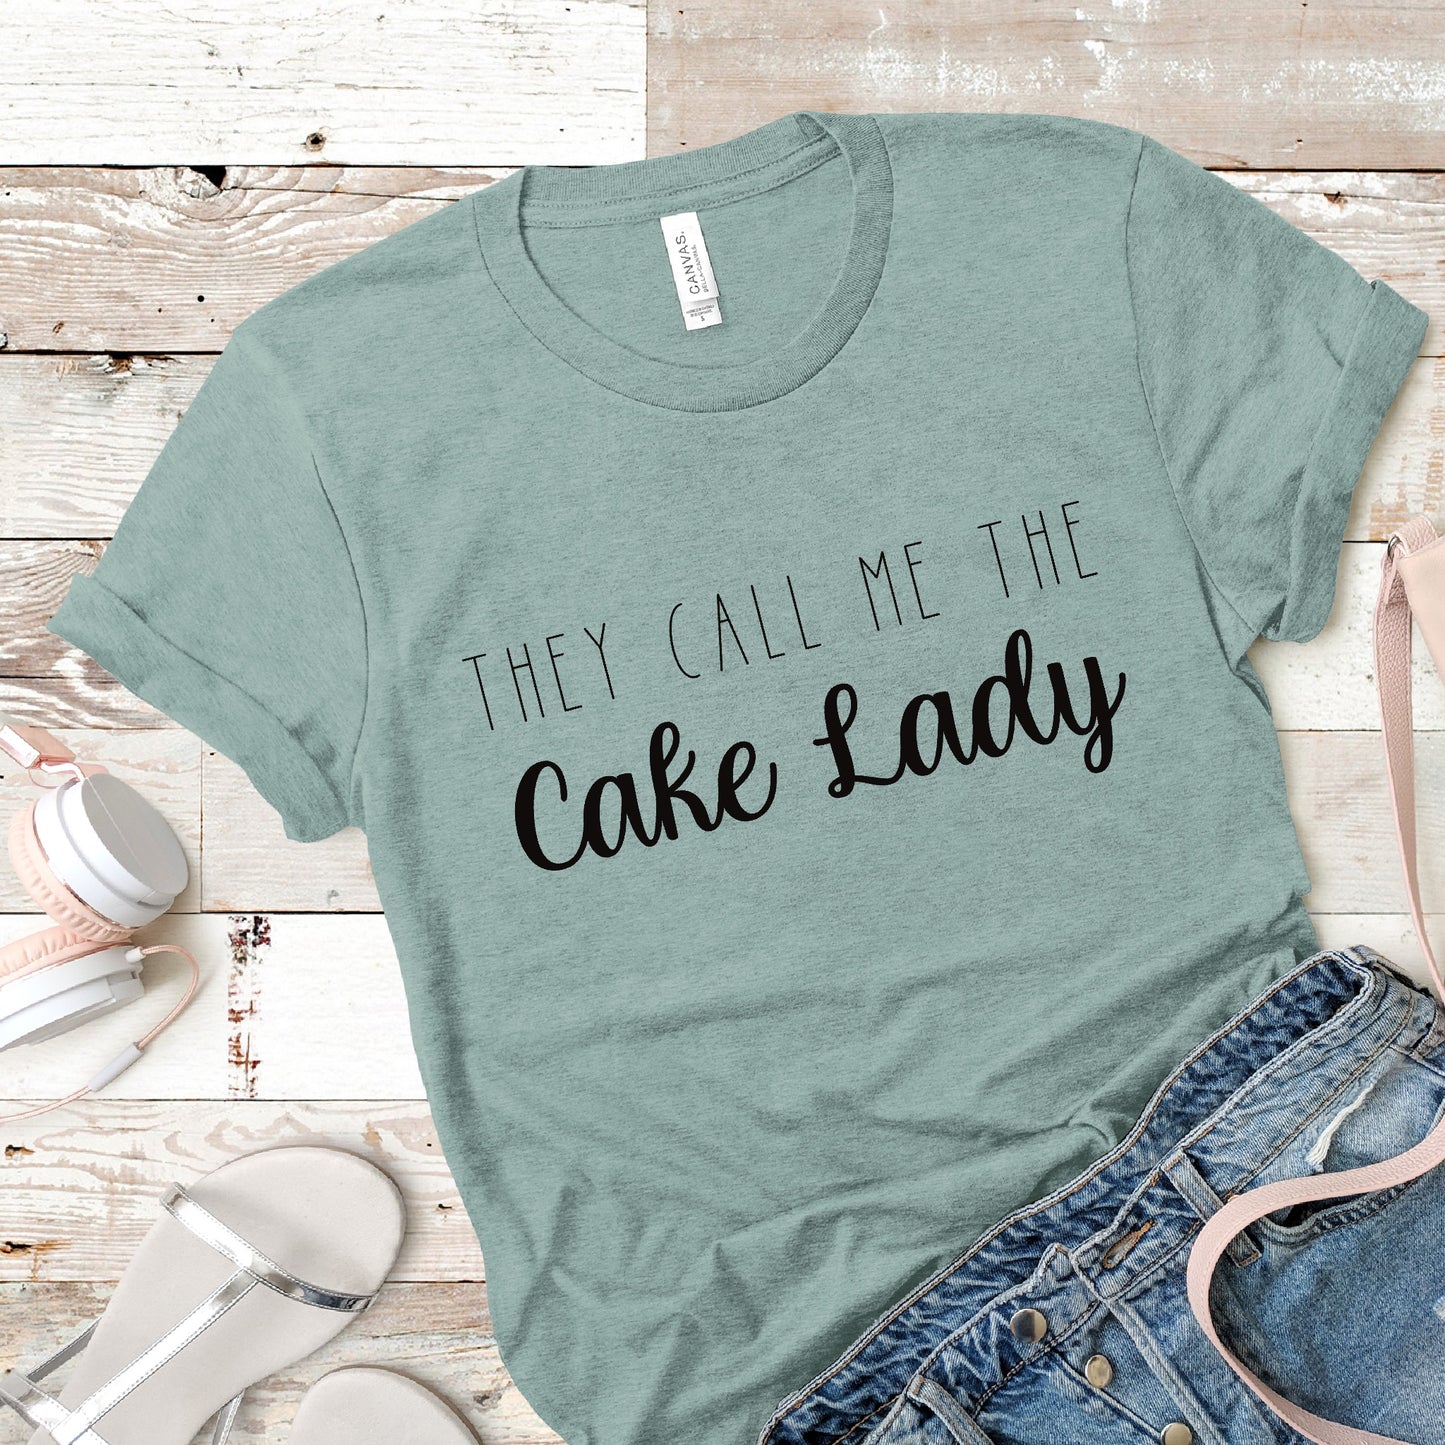 Cake Lady - Unisex Tee